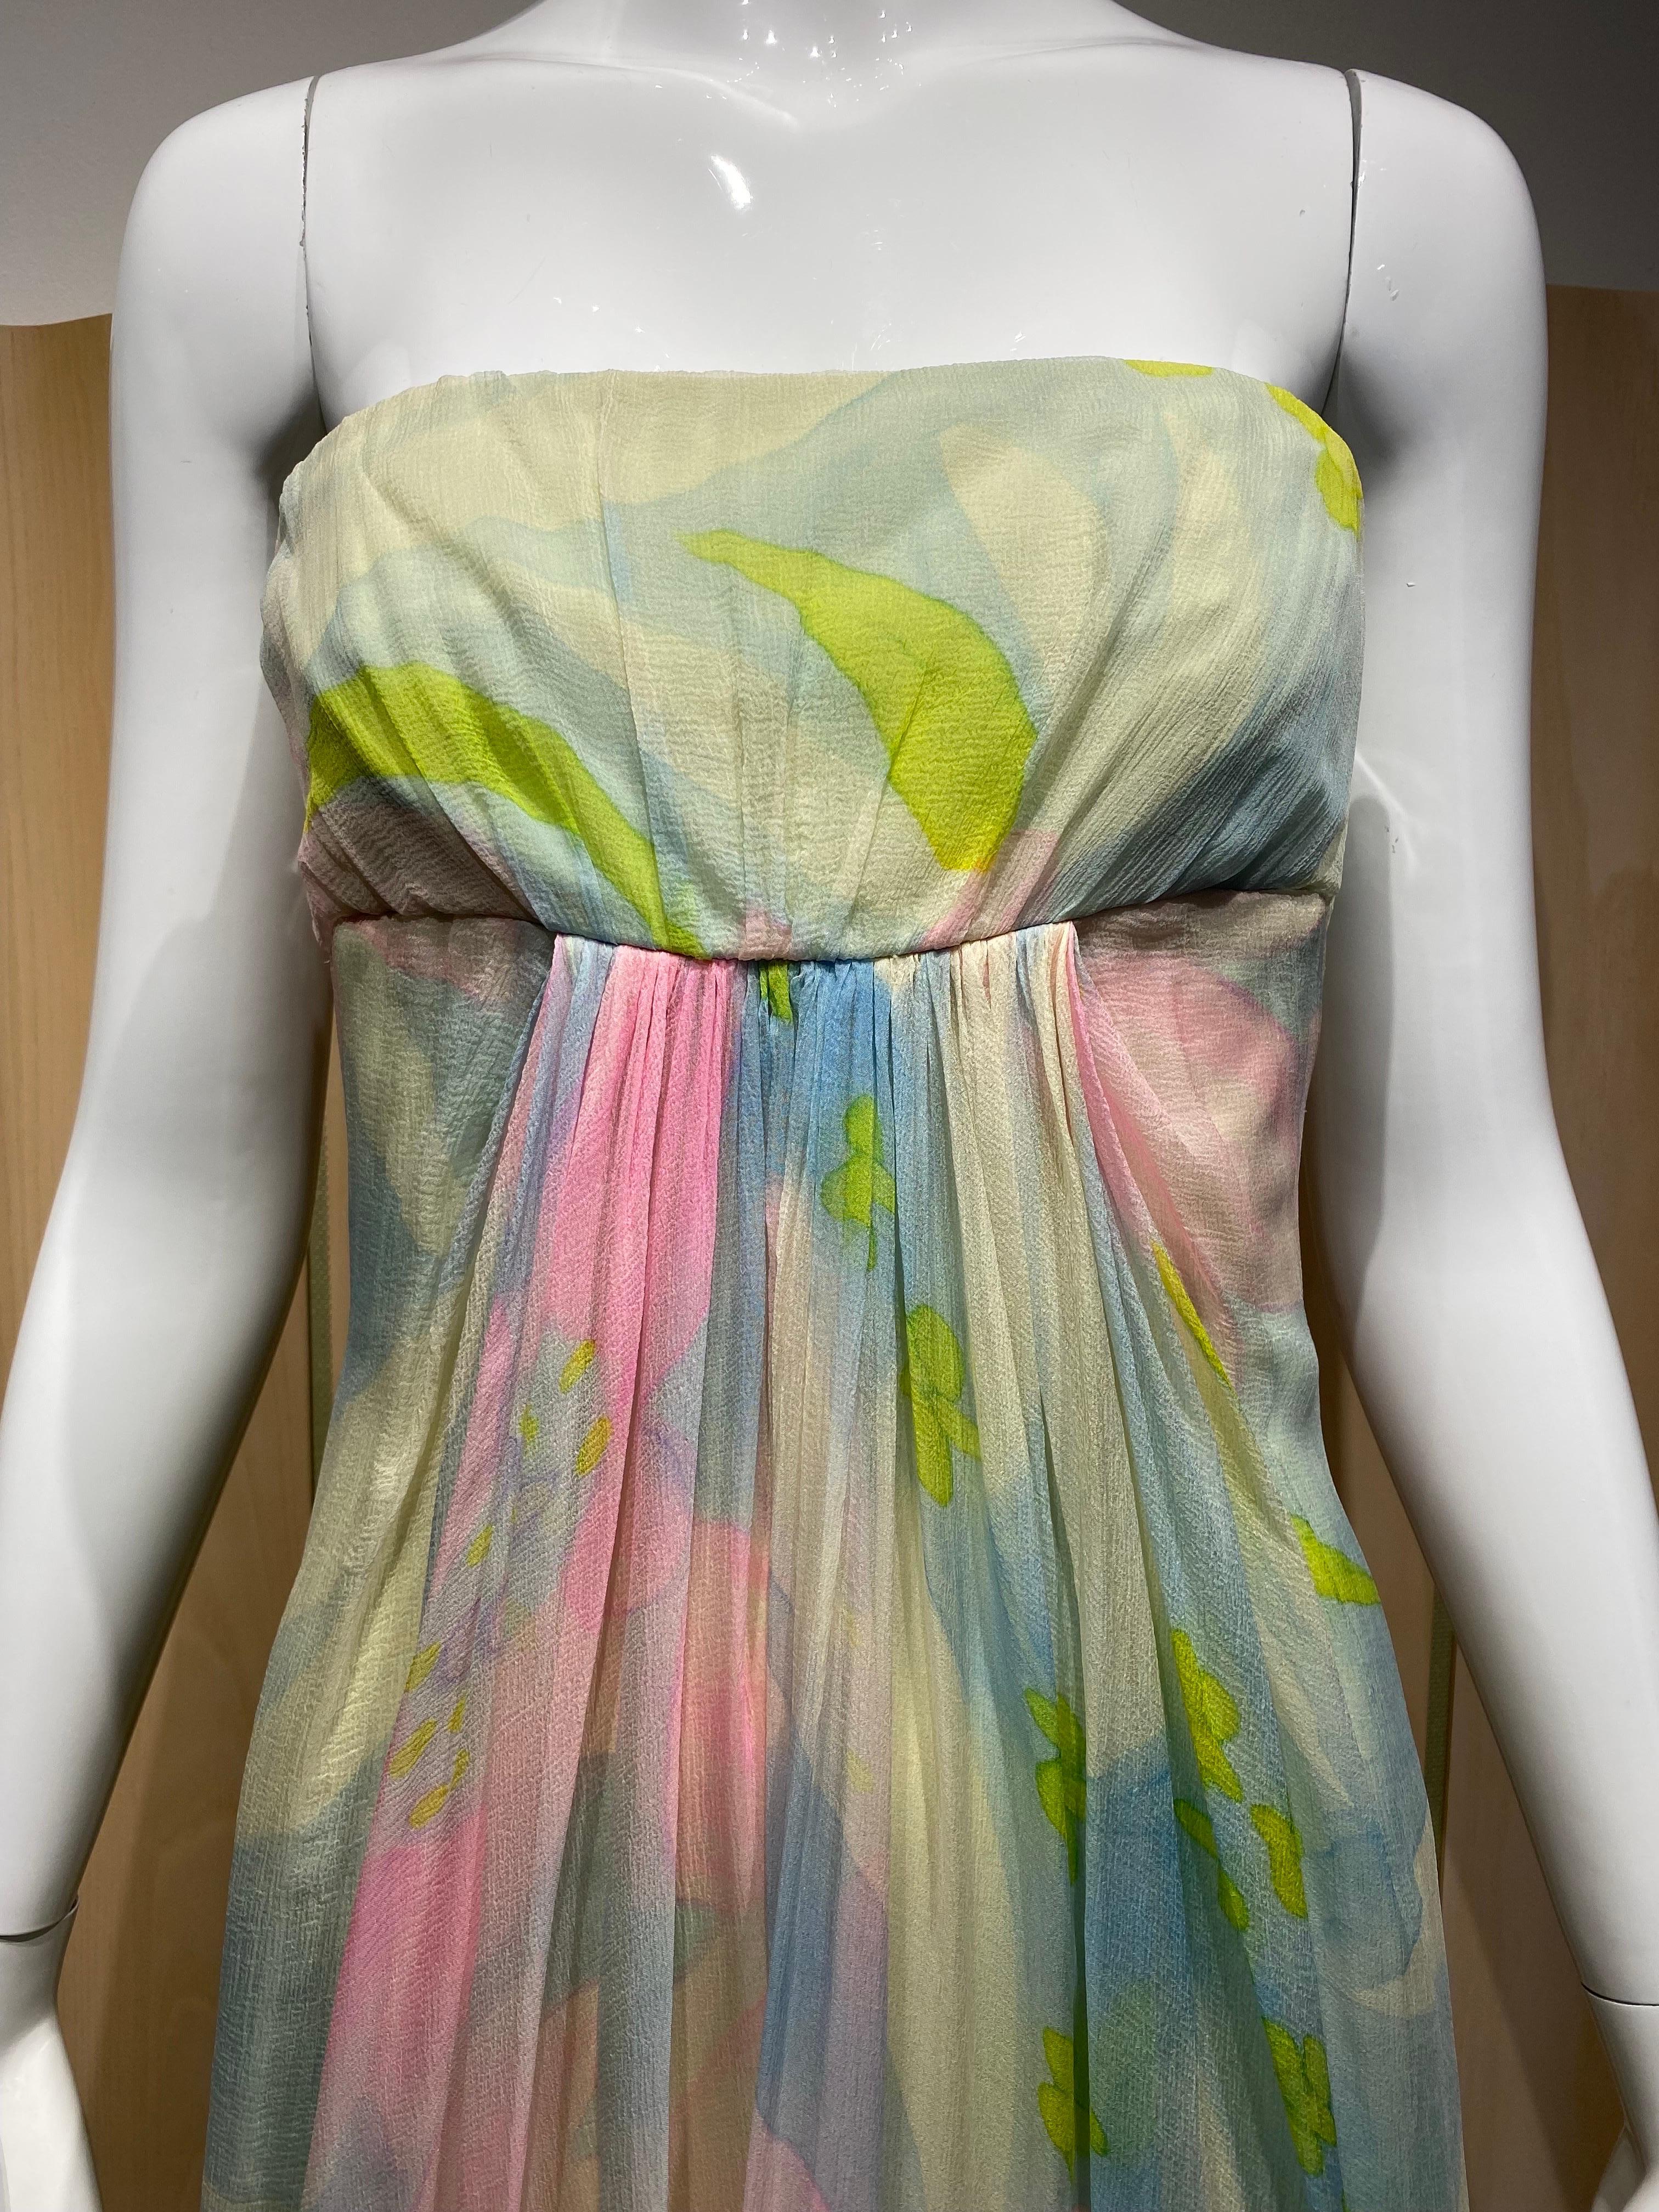 1970er Jahre Helena Barbieri Pastell Aquarelldruck in grün, rosa und türkis Seide trägerlosen Kleid mit Jacke.
Passform Größe 2/4/ Klein